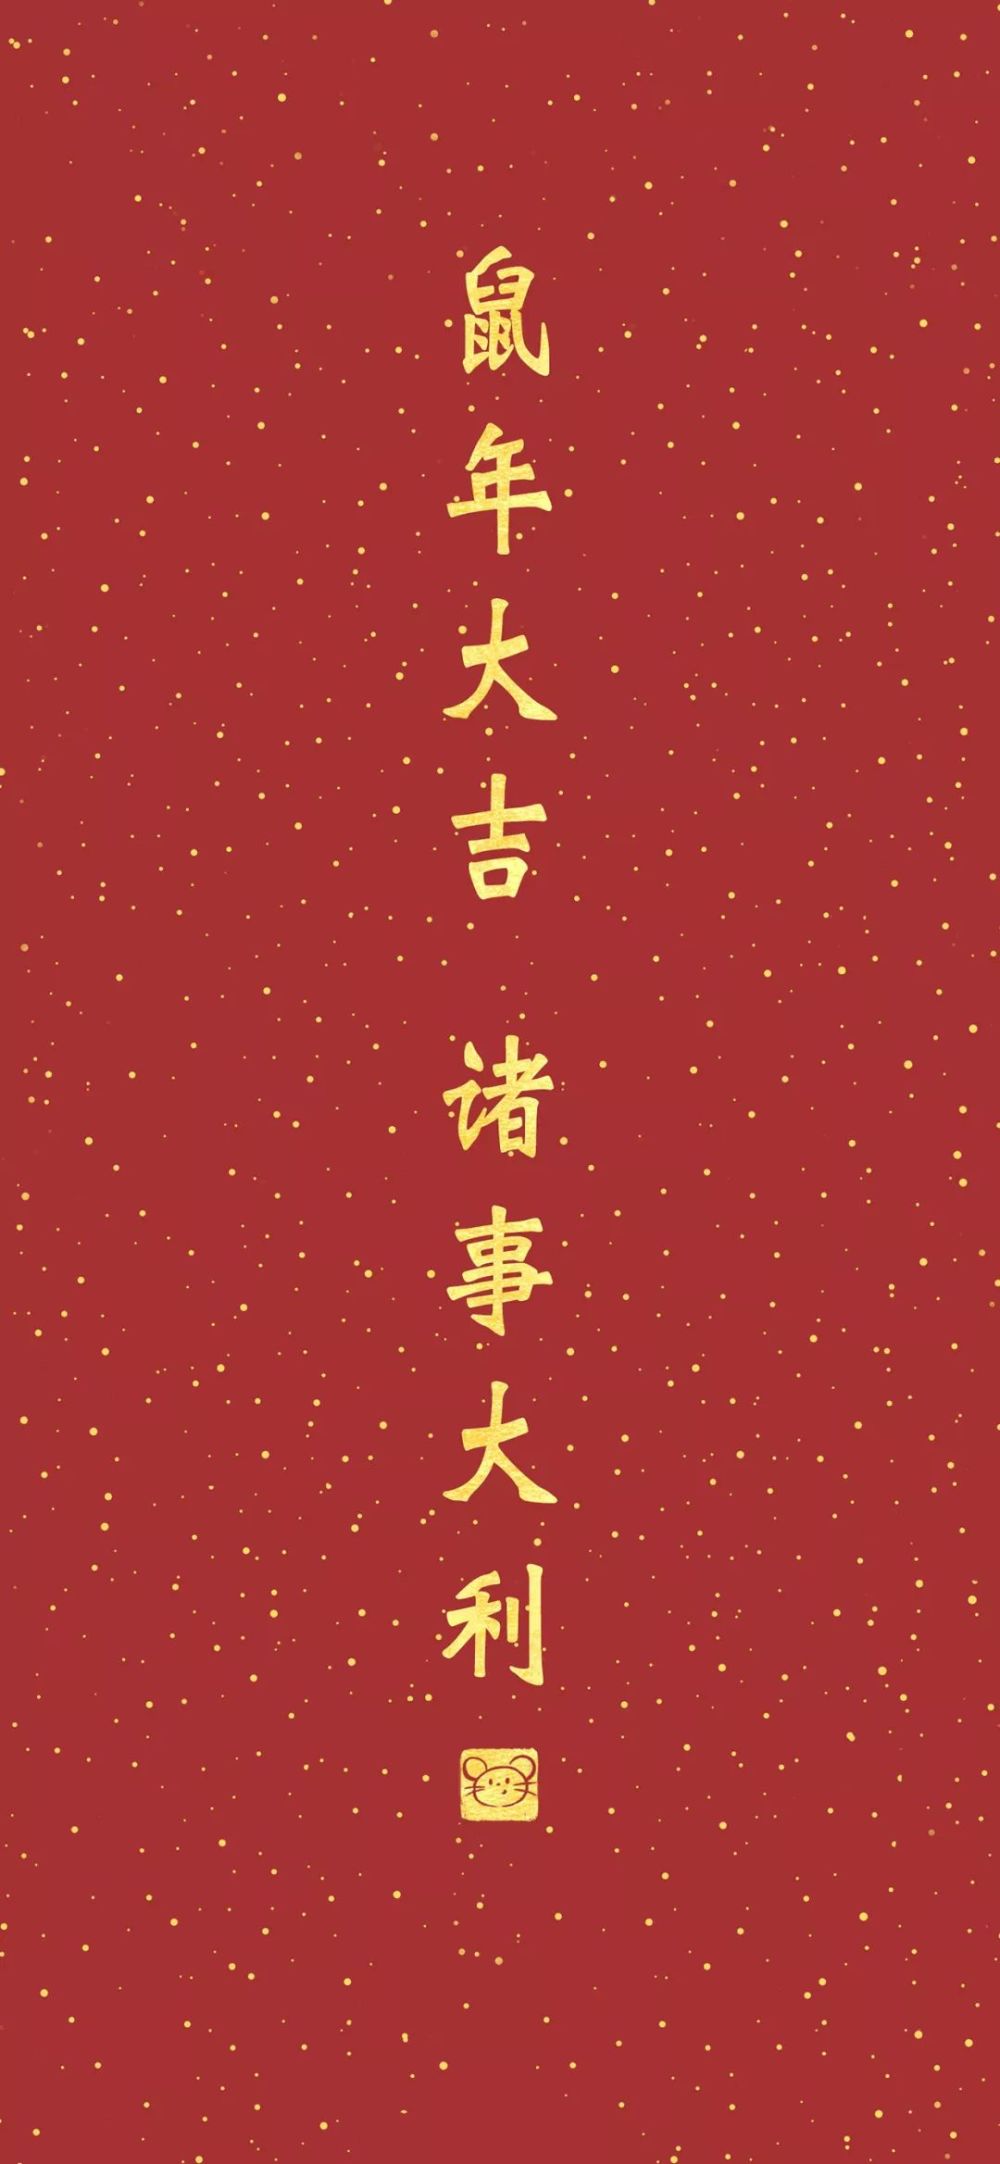 【新年壁纸】新春快乐,恭喜发财!